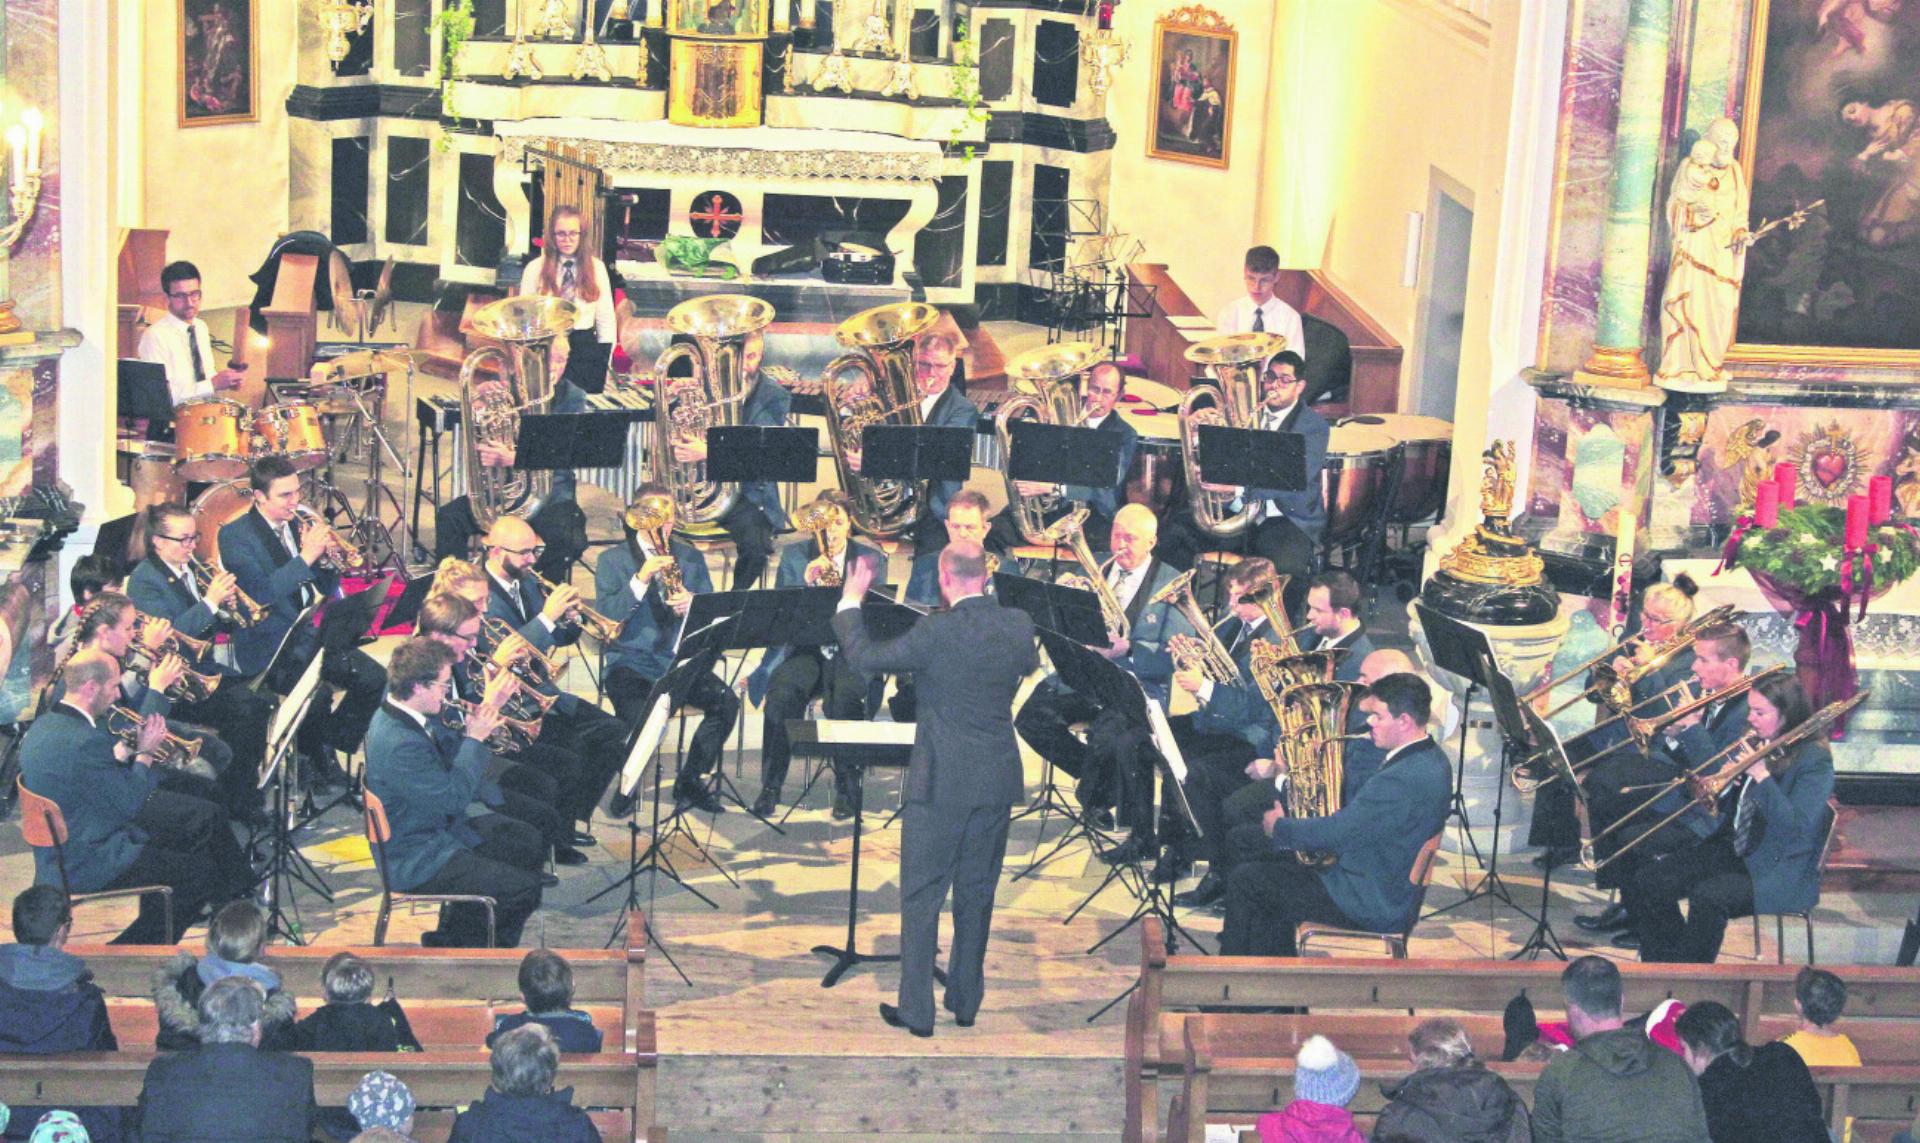 Die Musikgesellschaft Brass Band Auw spielte die Live-Musik zum Märchen «Aschenputtel» der Gebrüder Grimm. Fotos: dv